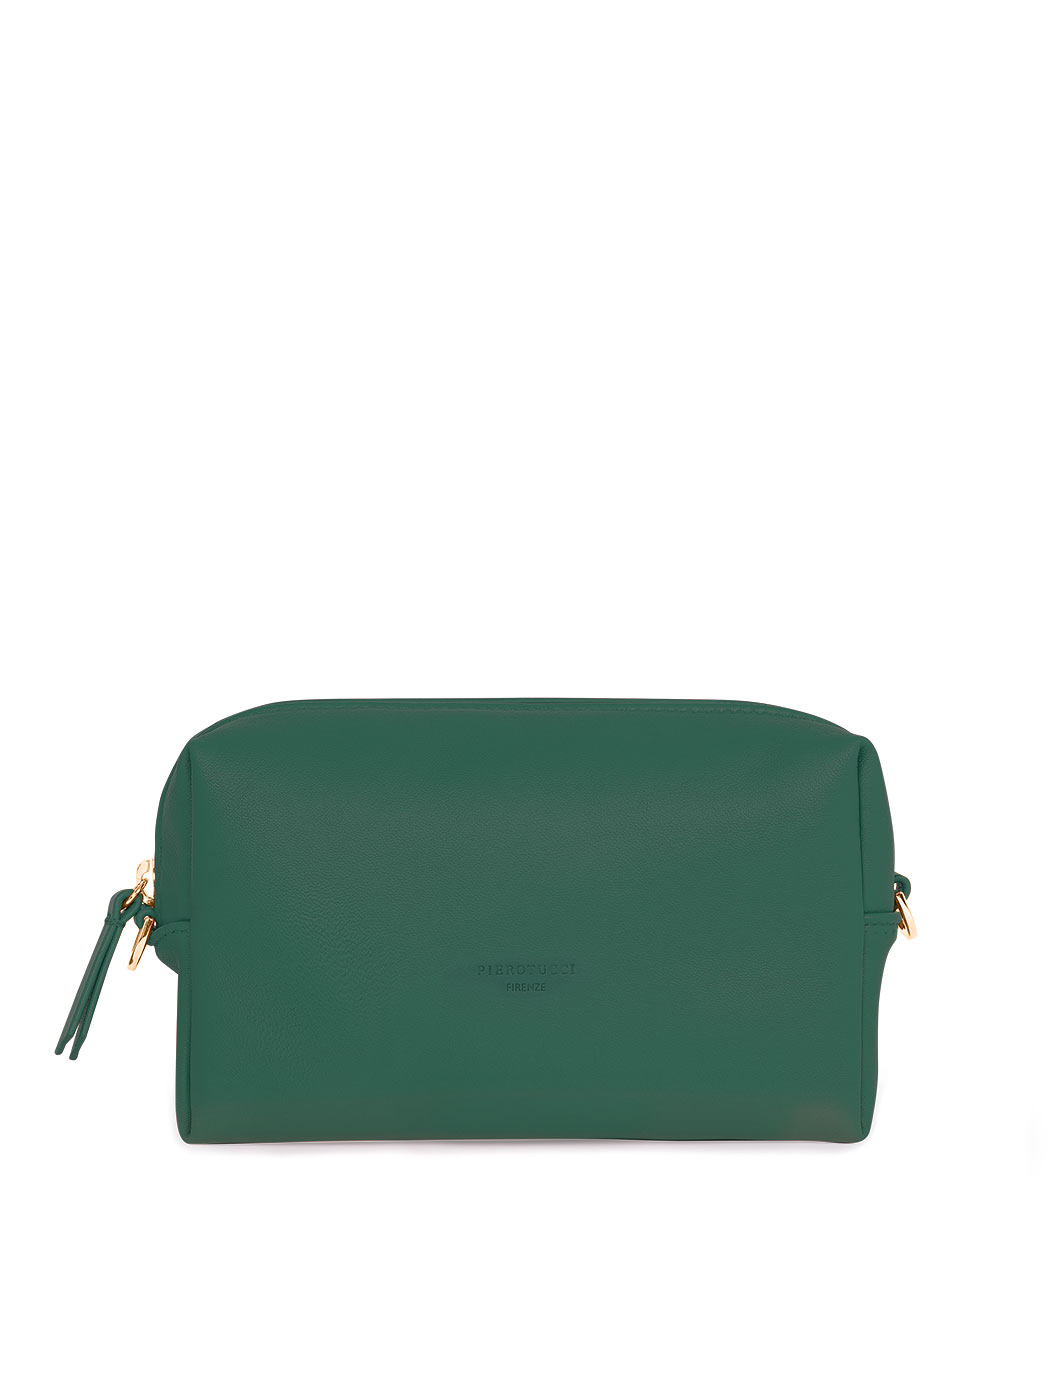 Прямоугольная сумочка с регулируемым ремнем зеленого цвета